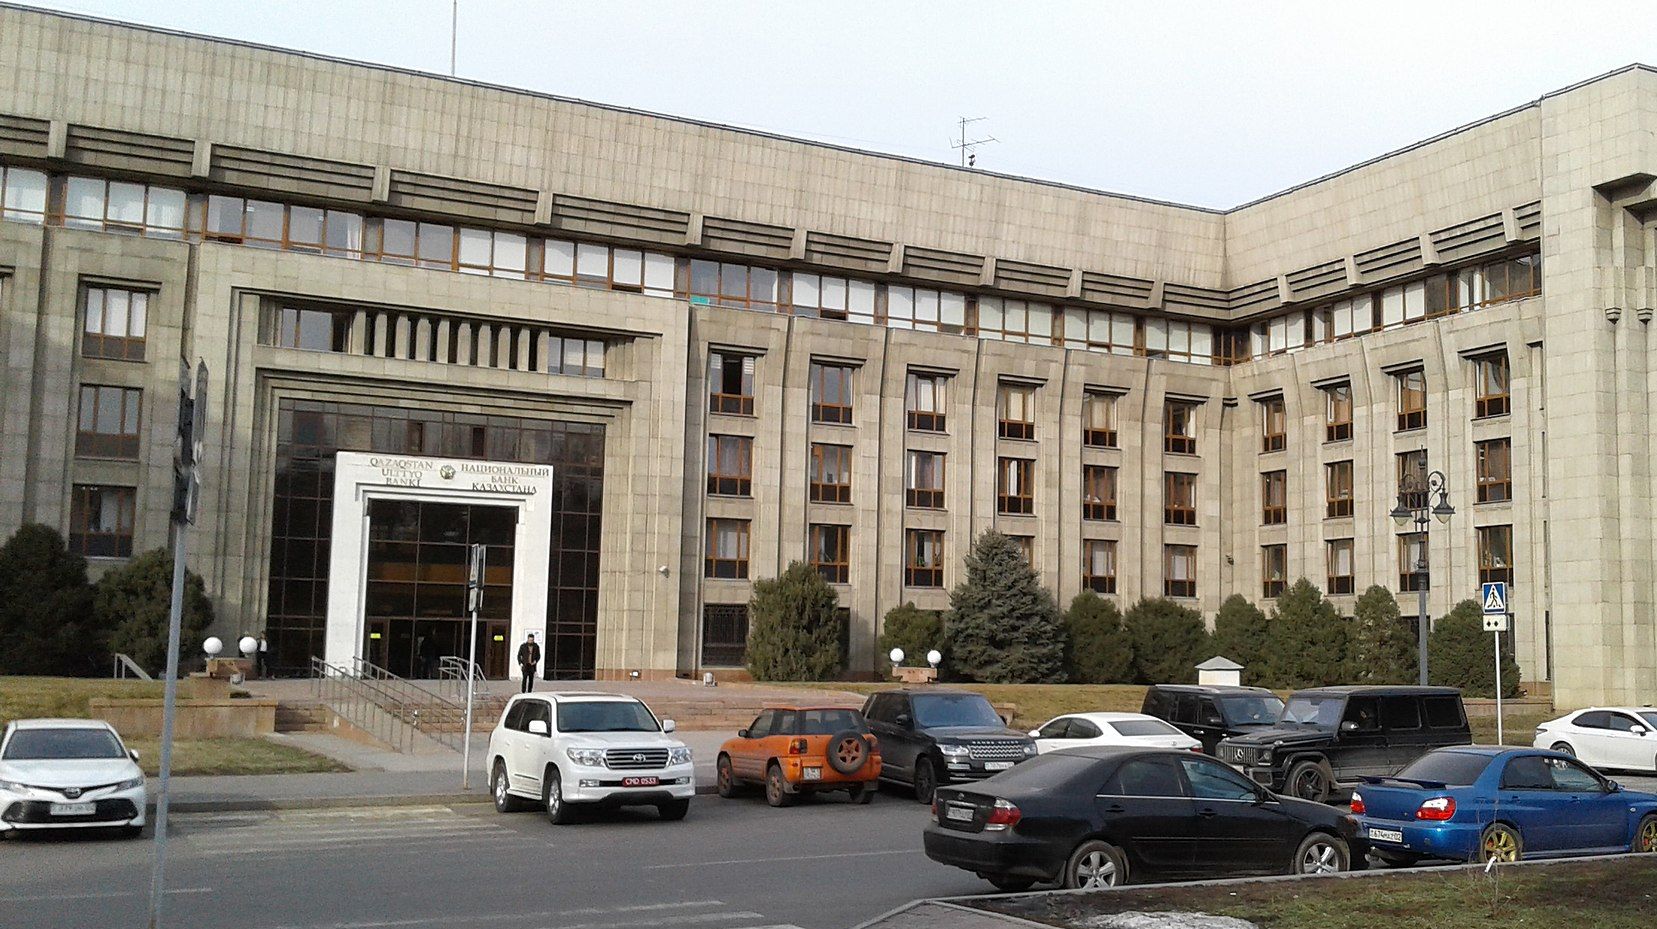 Здание Национального банка Казахстана. г. Алма-Ата